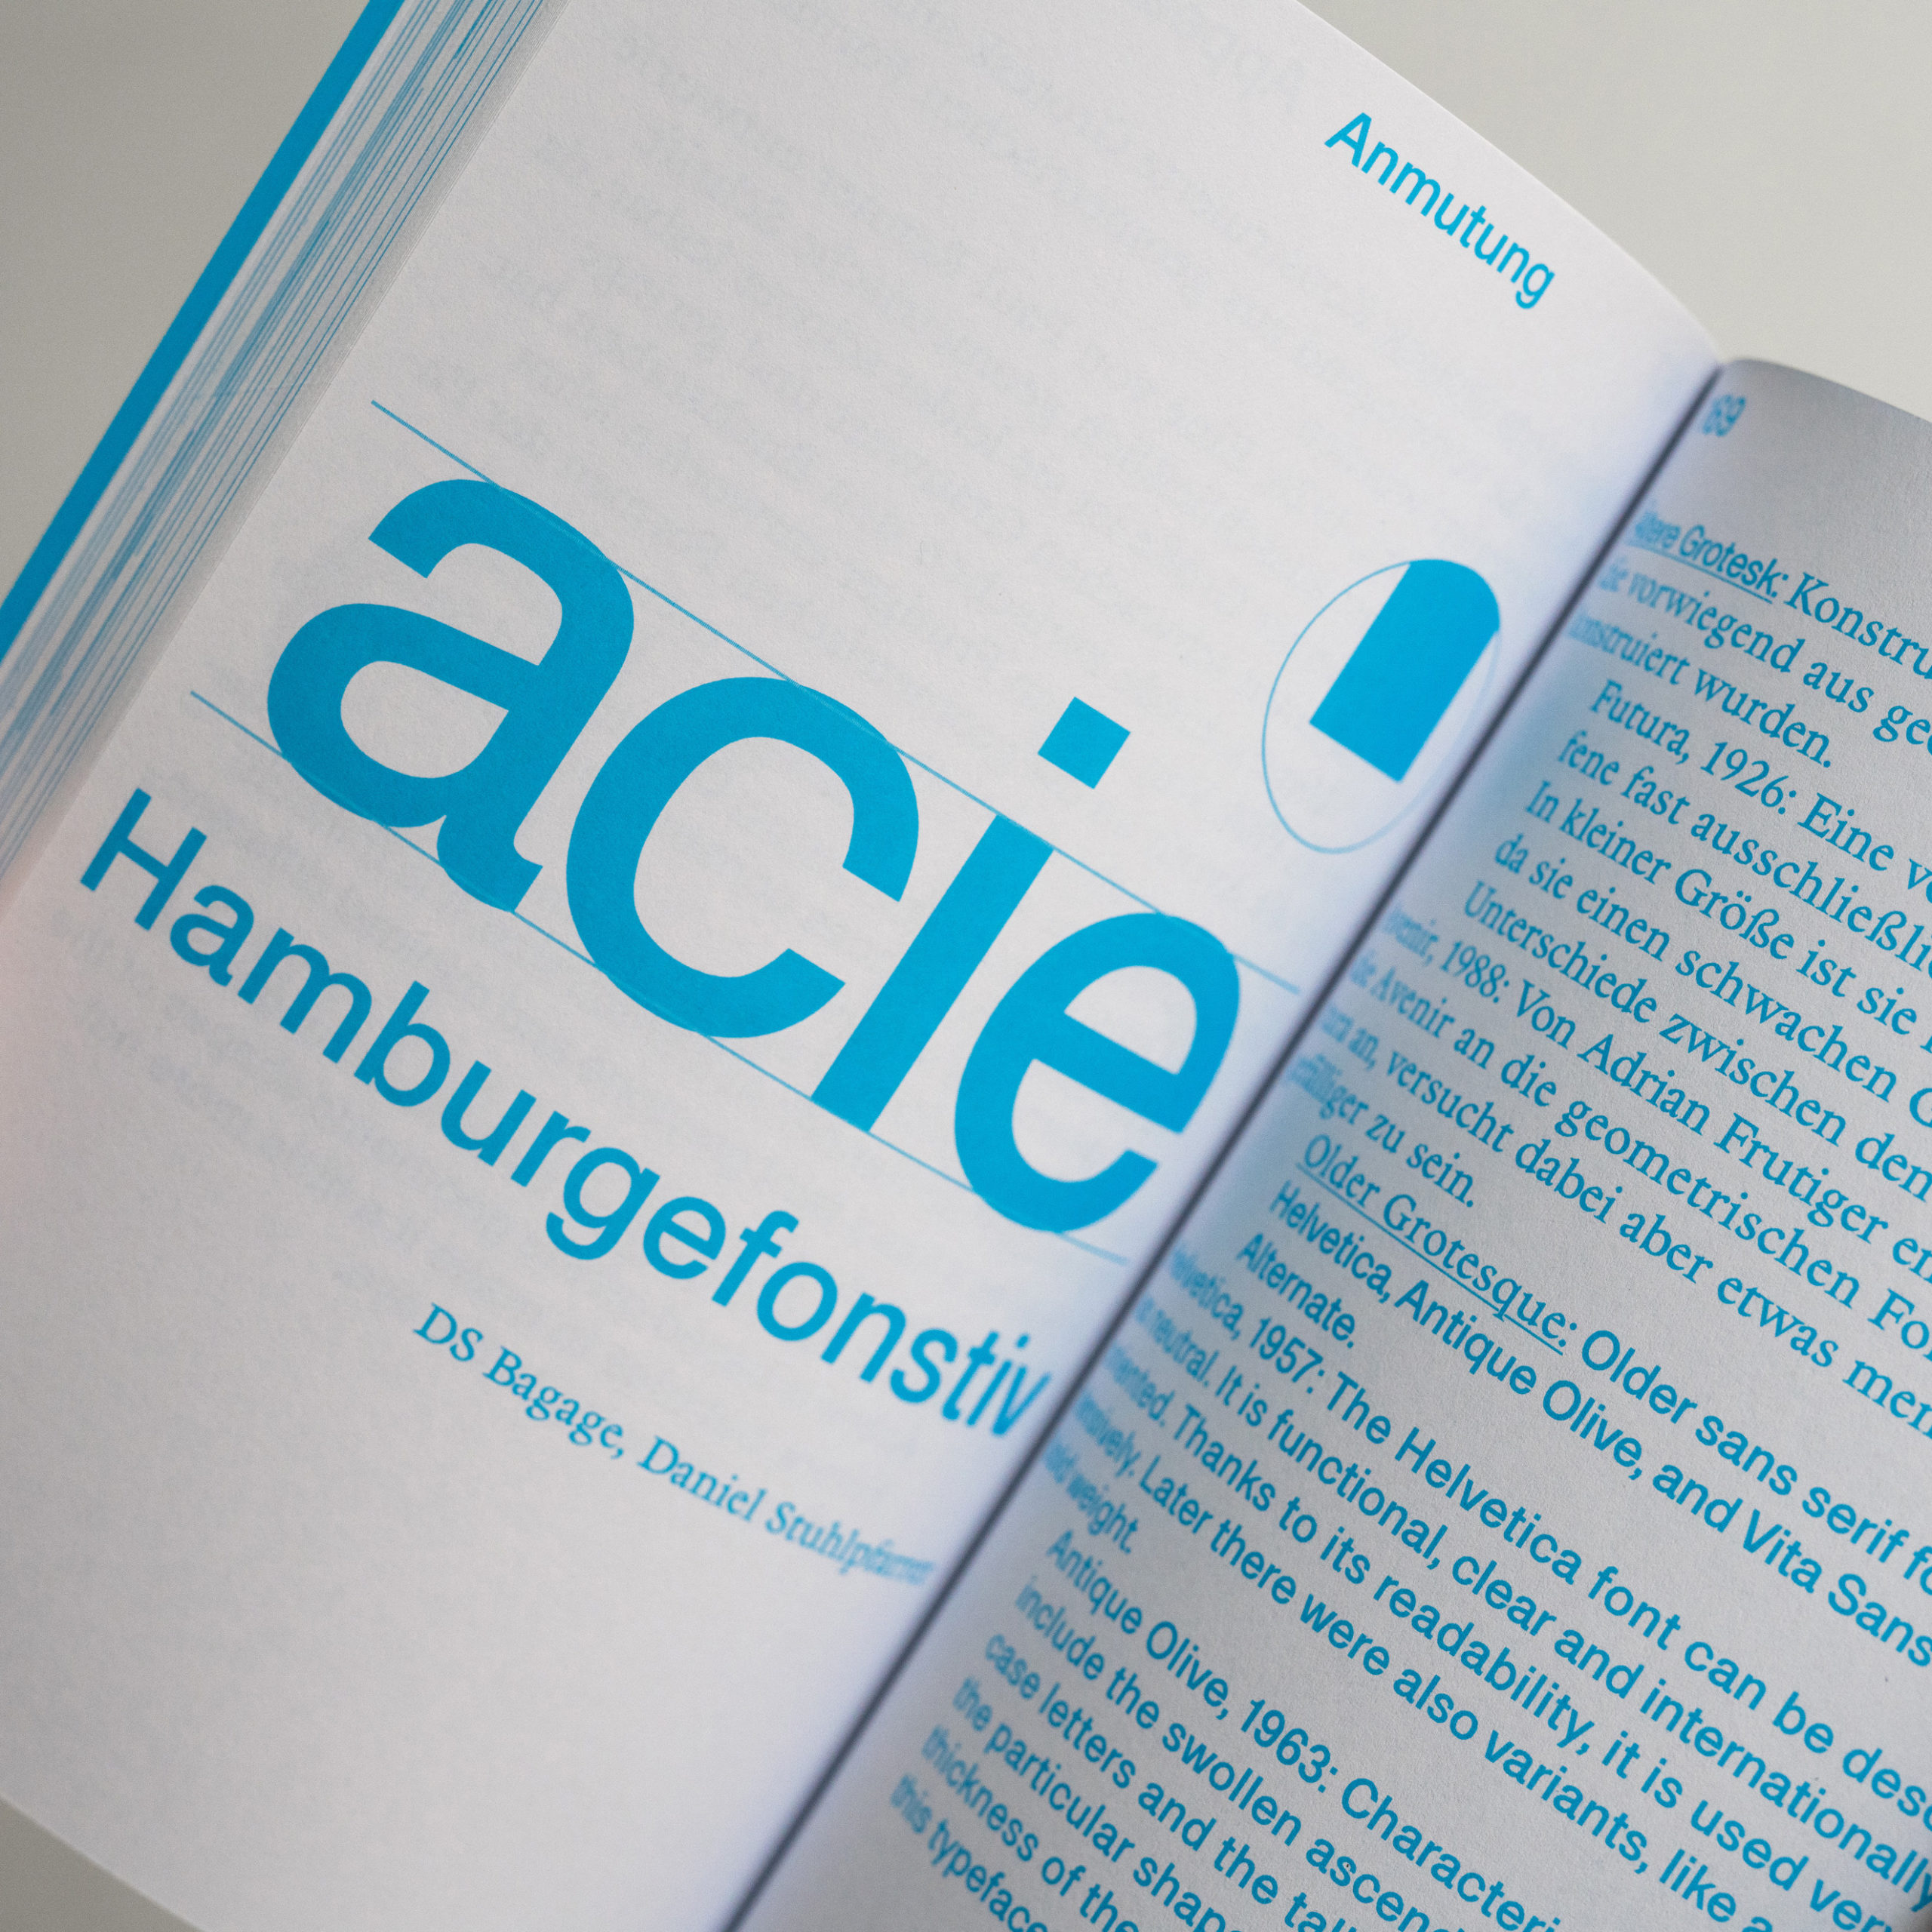 Daniel-Stuhlpfarrer_typedesign_graphicdesign_typography_bookdesign_Character-character_11